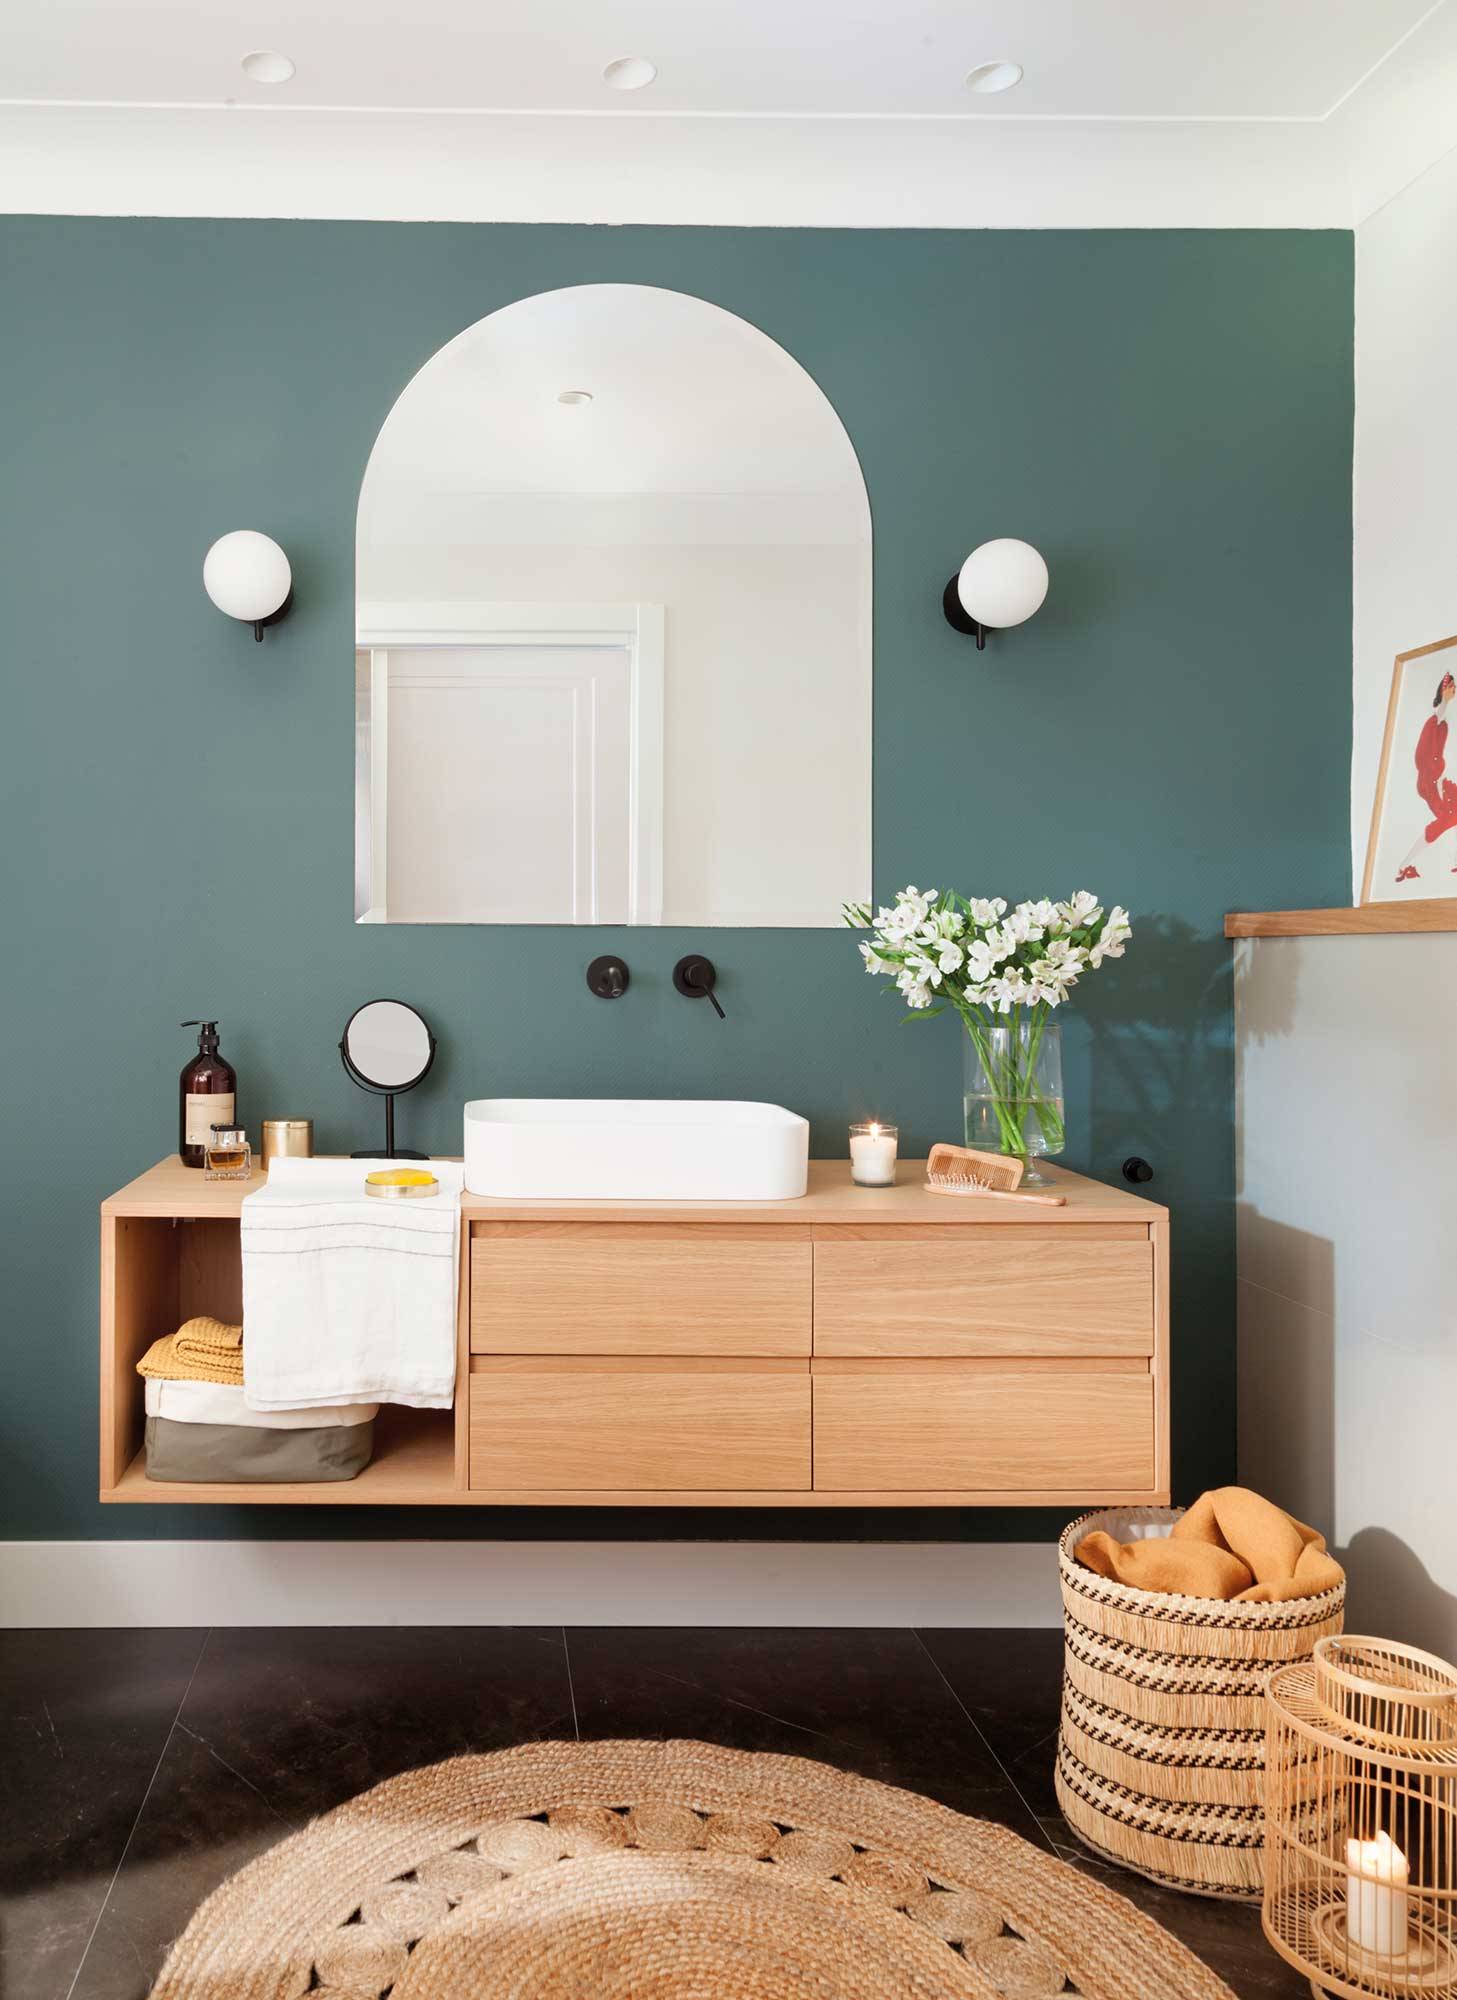 Baño moderno con pared de color azul profundo, mueble de madera y detalles decorativos de fibras naturales 00528739